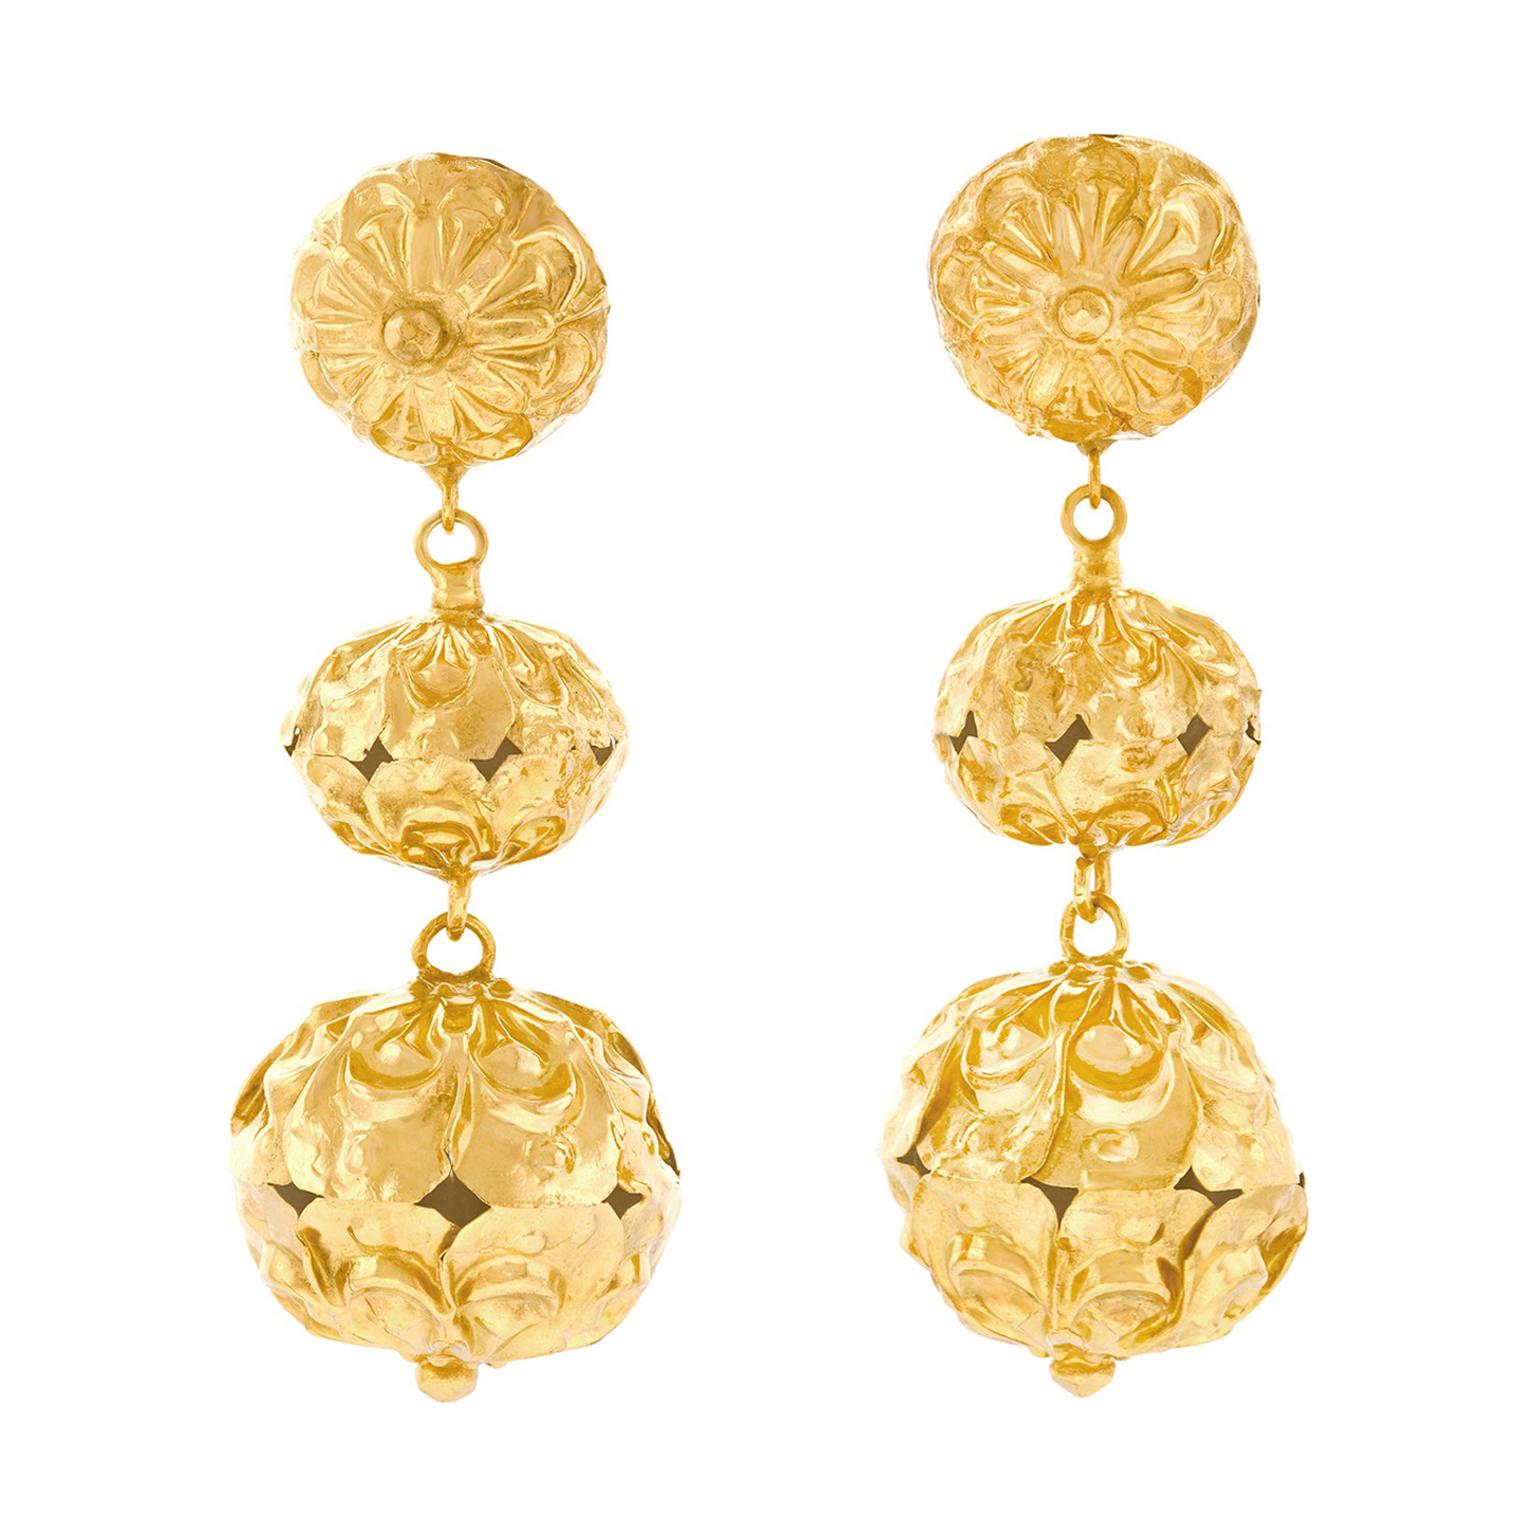 Victorian Chandelier Earrings in Gold